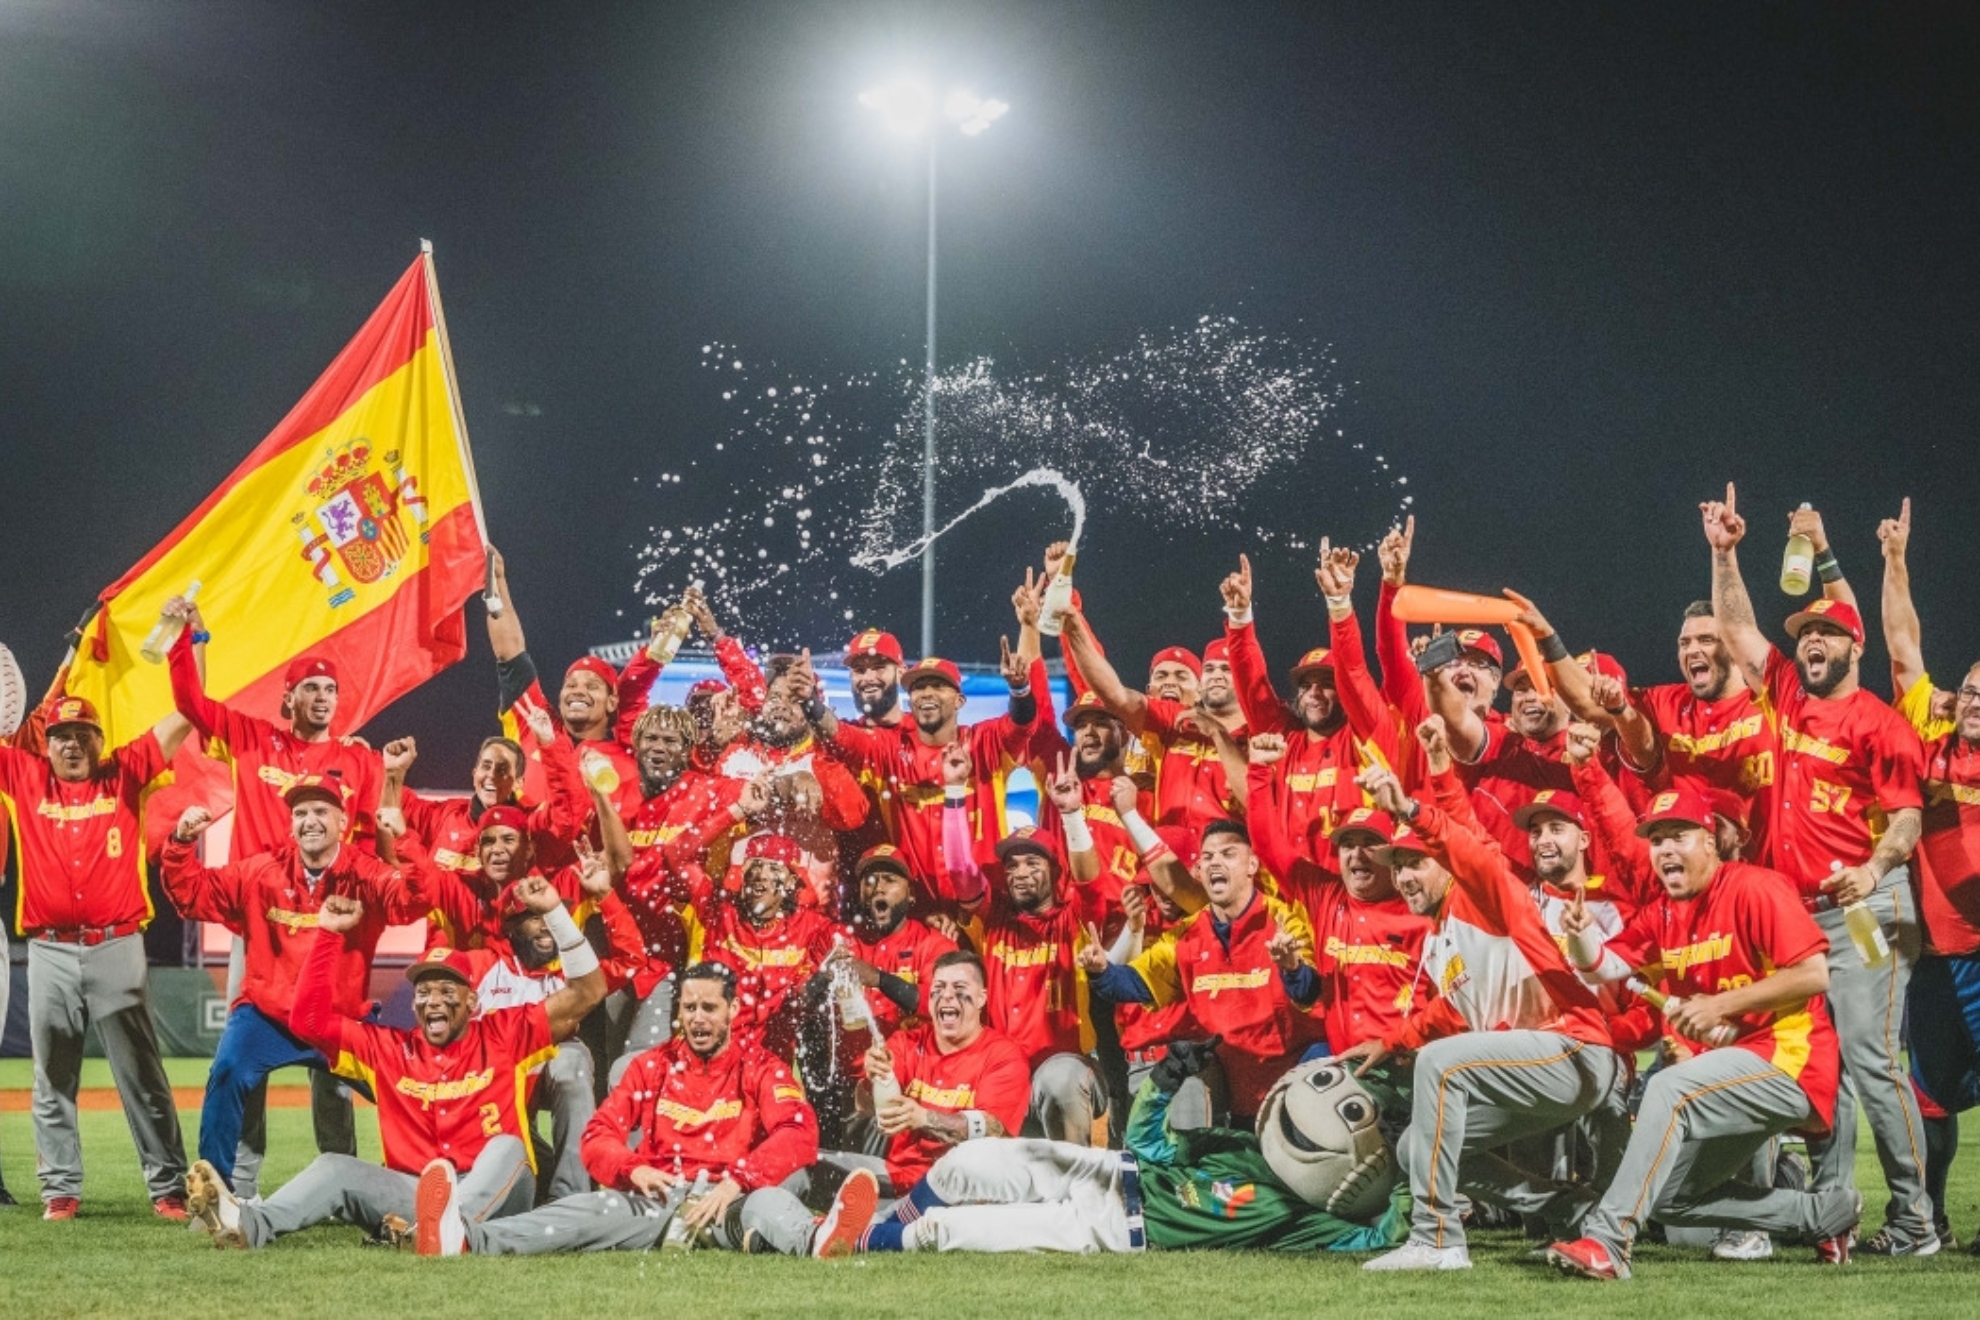 La selección española celebra el triunfo en el Campeonato de Europa de béisbol